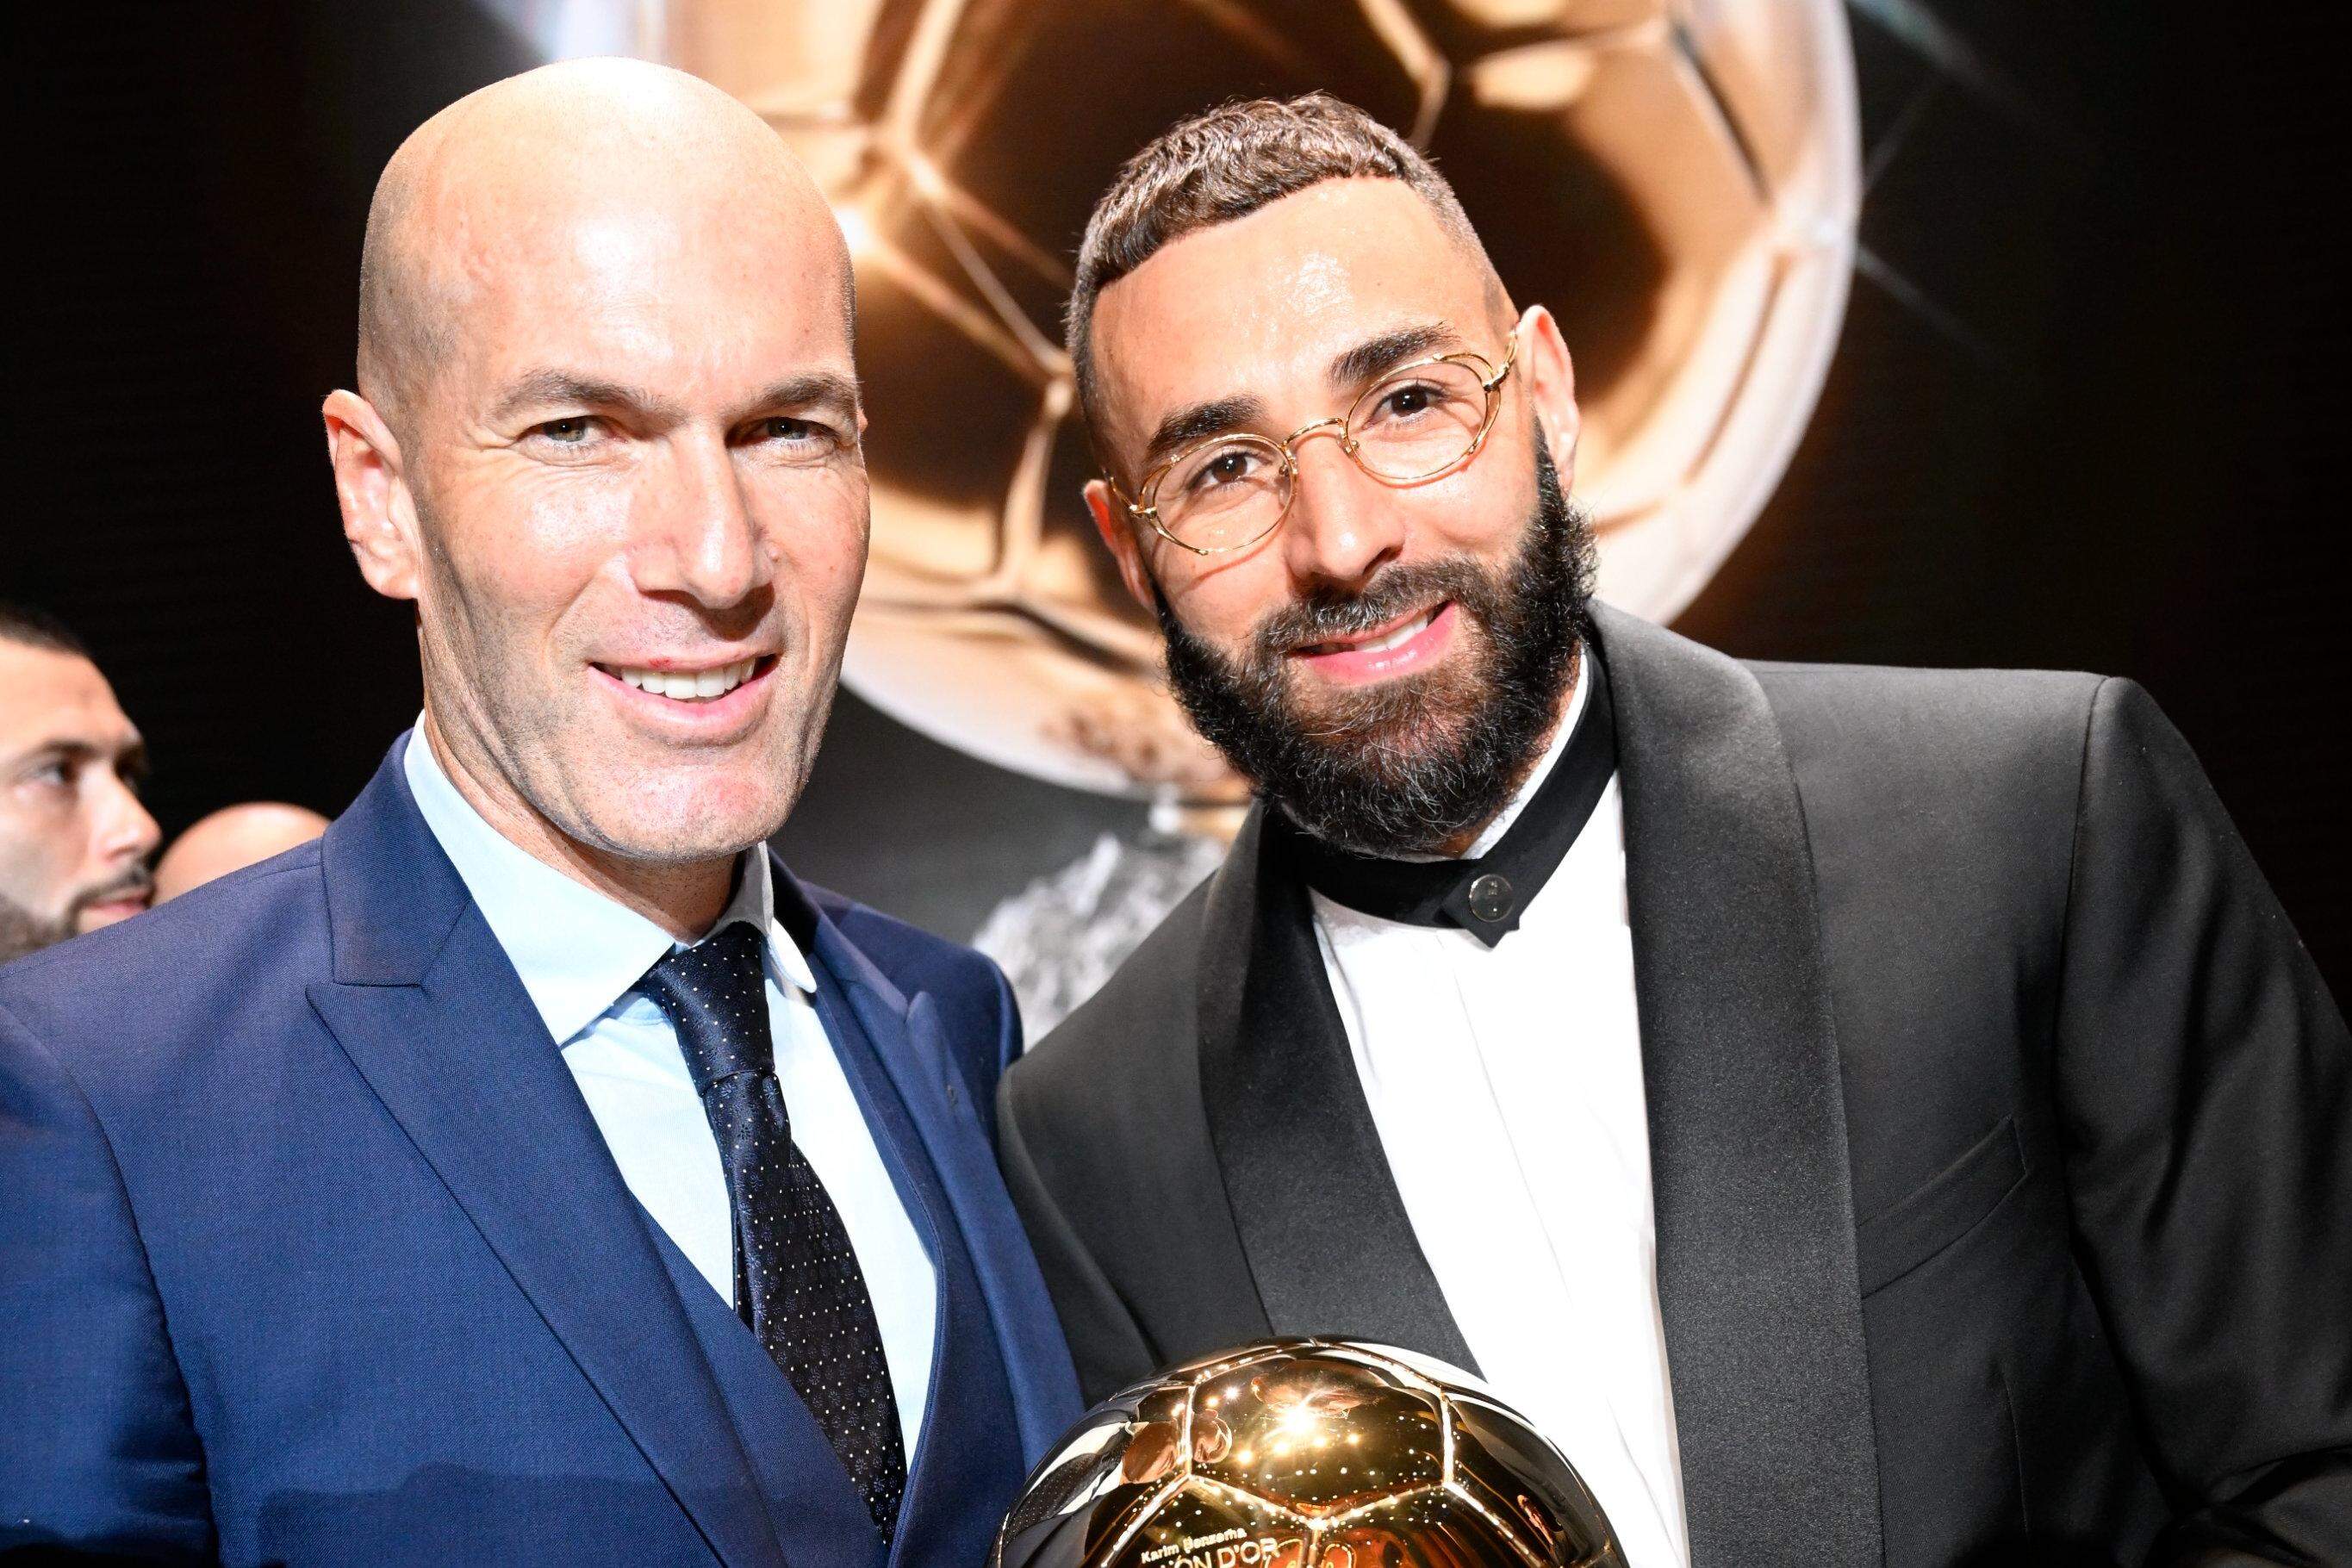 Bola de Ouro 2022: Benzema é melhor jogador do mundo